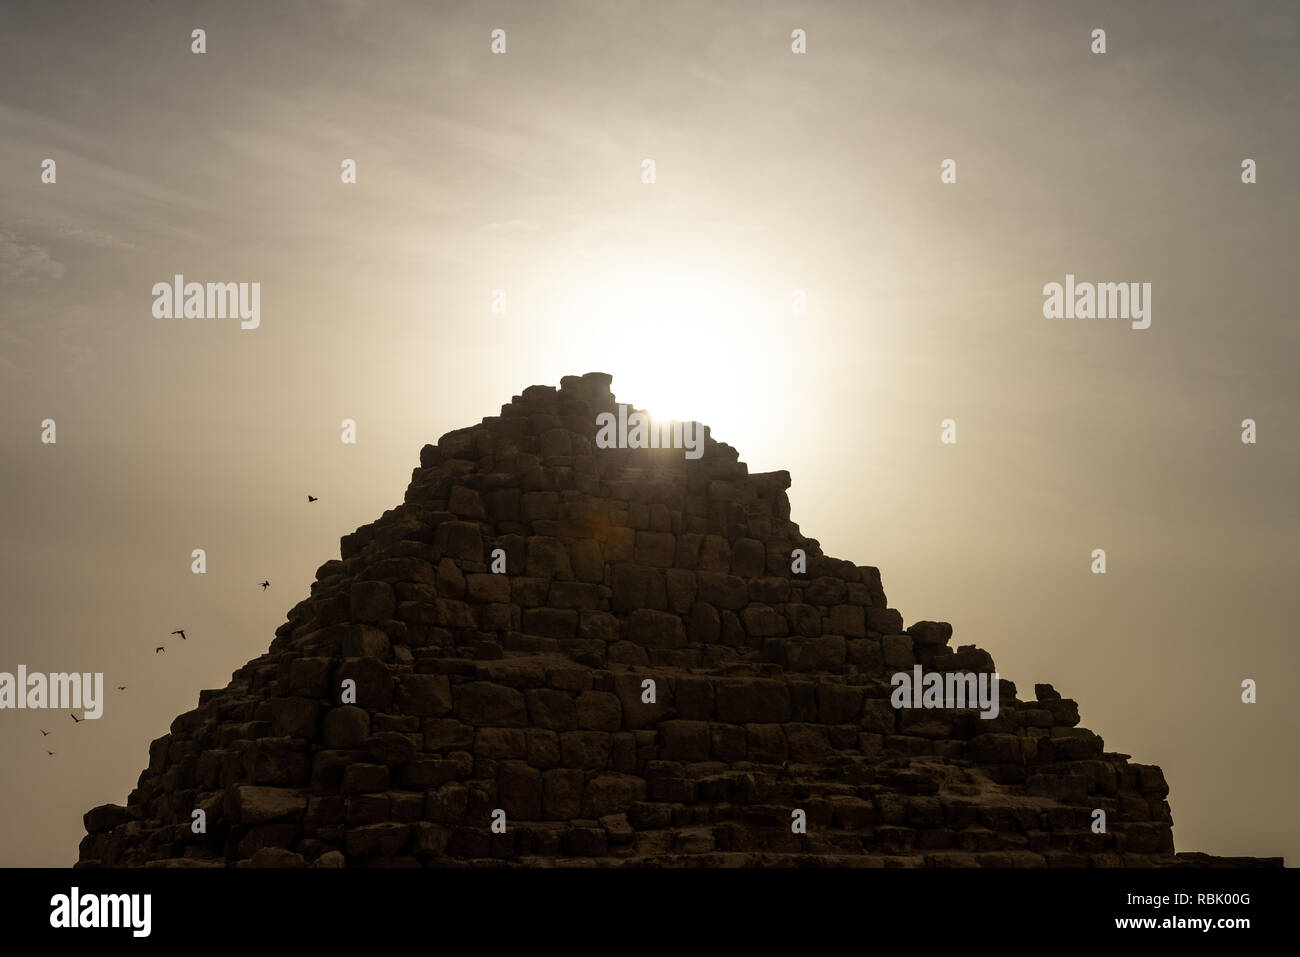 Das Grab der Königin Hetepheres in der Pyramide von Gizeh Komplex mit Sterne Strahlen der aufgehenden Sonne hinter sich und Tauben wegfliegen. Königin Hetepheres war ich ein Stockfoto